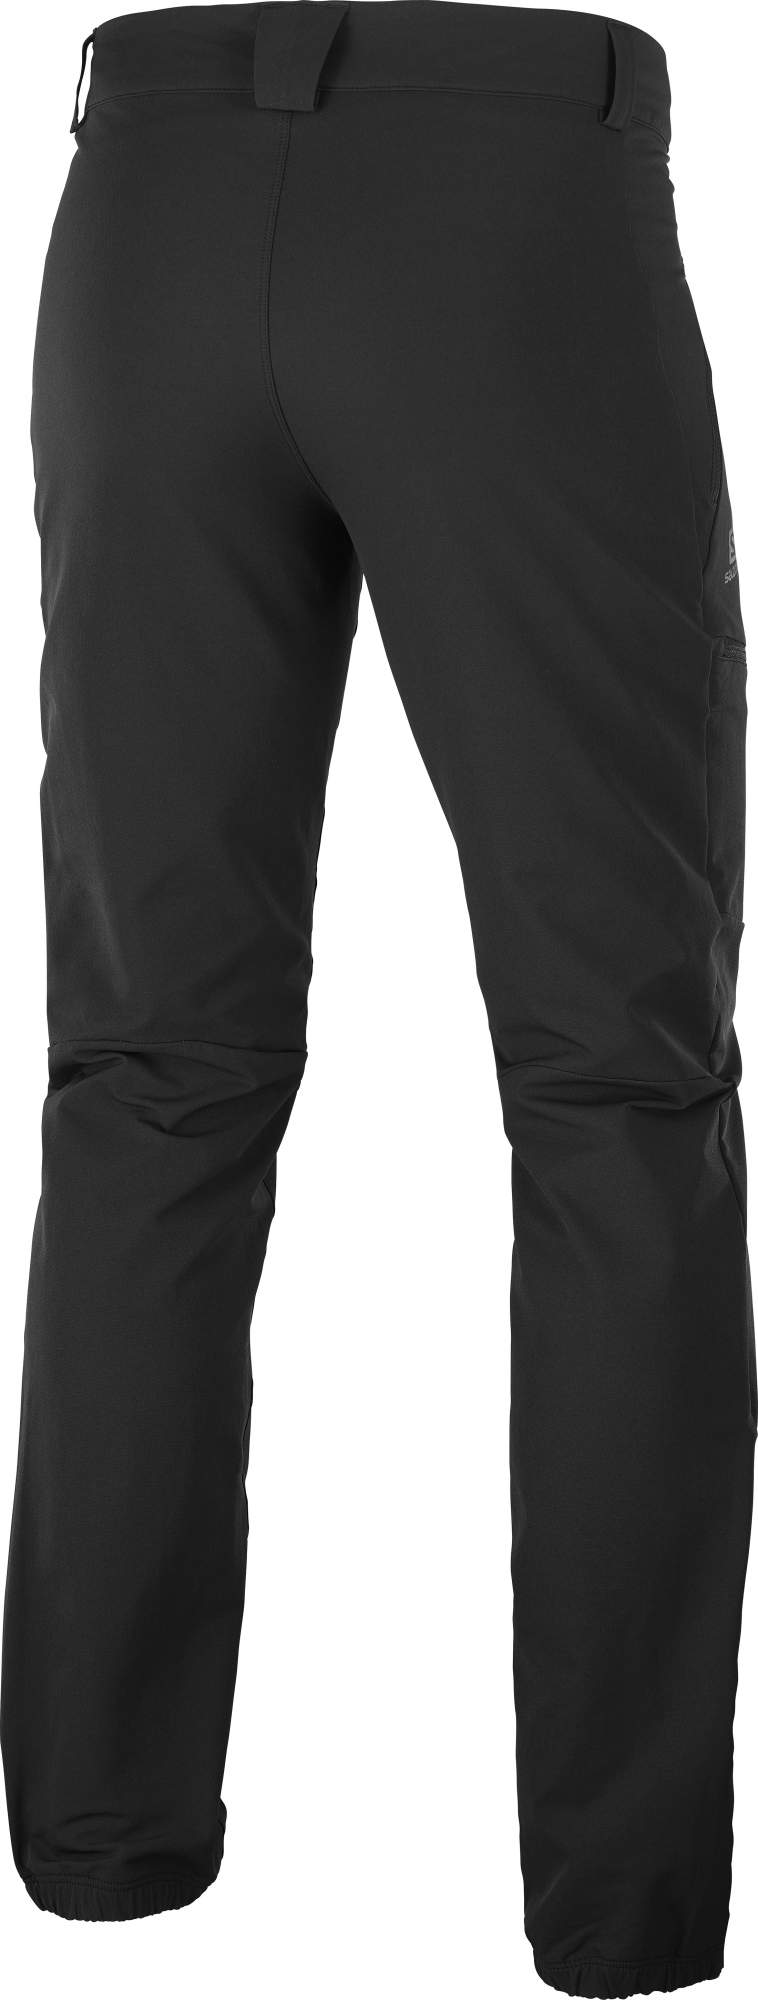 Спортивные брюки мужские Salomon Lc1595700 черные 46 RU